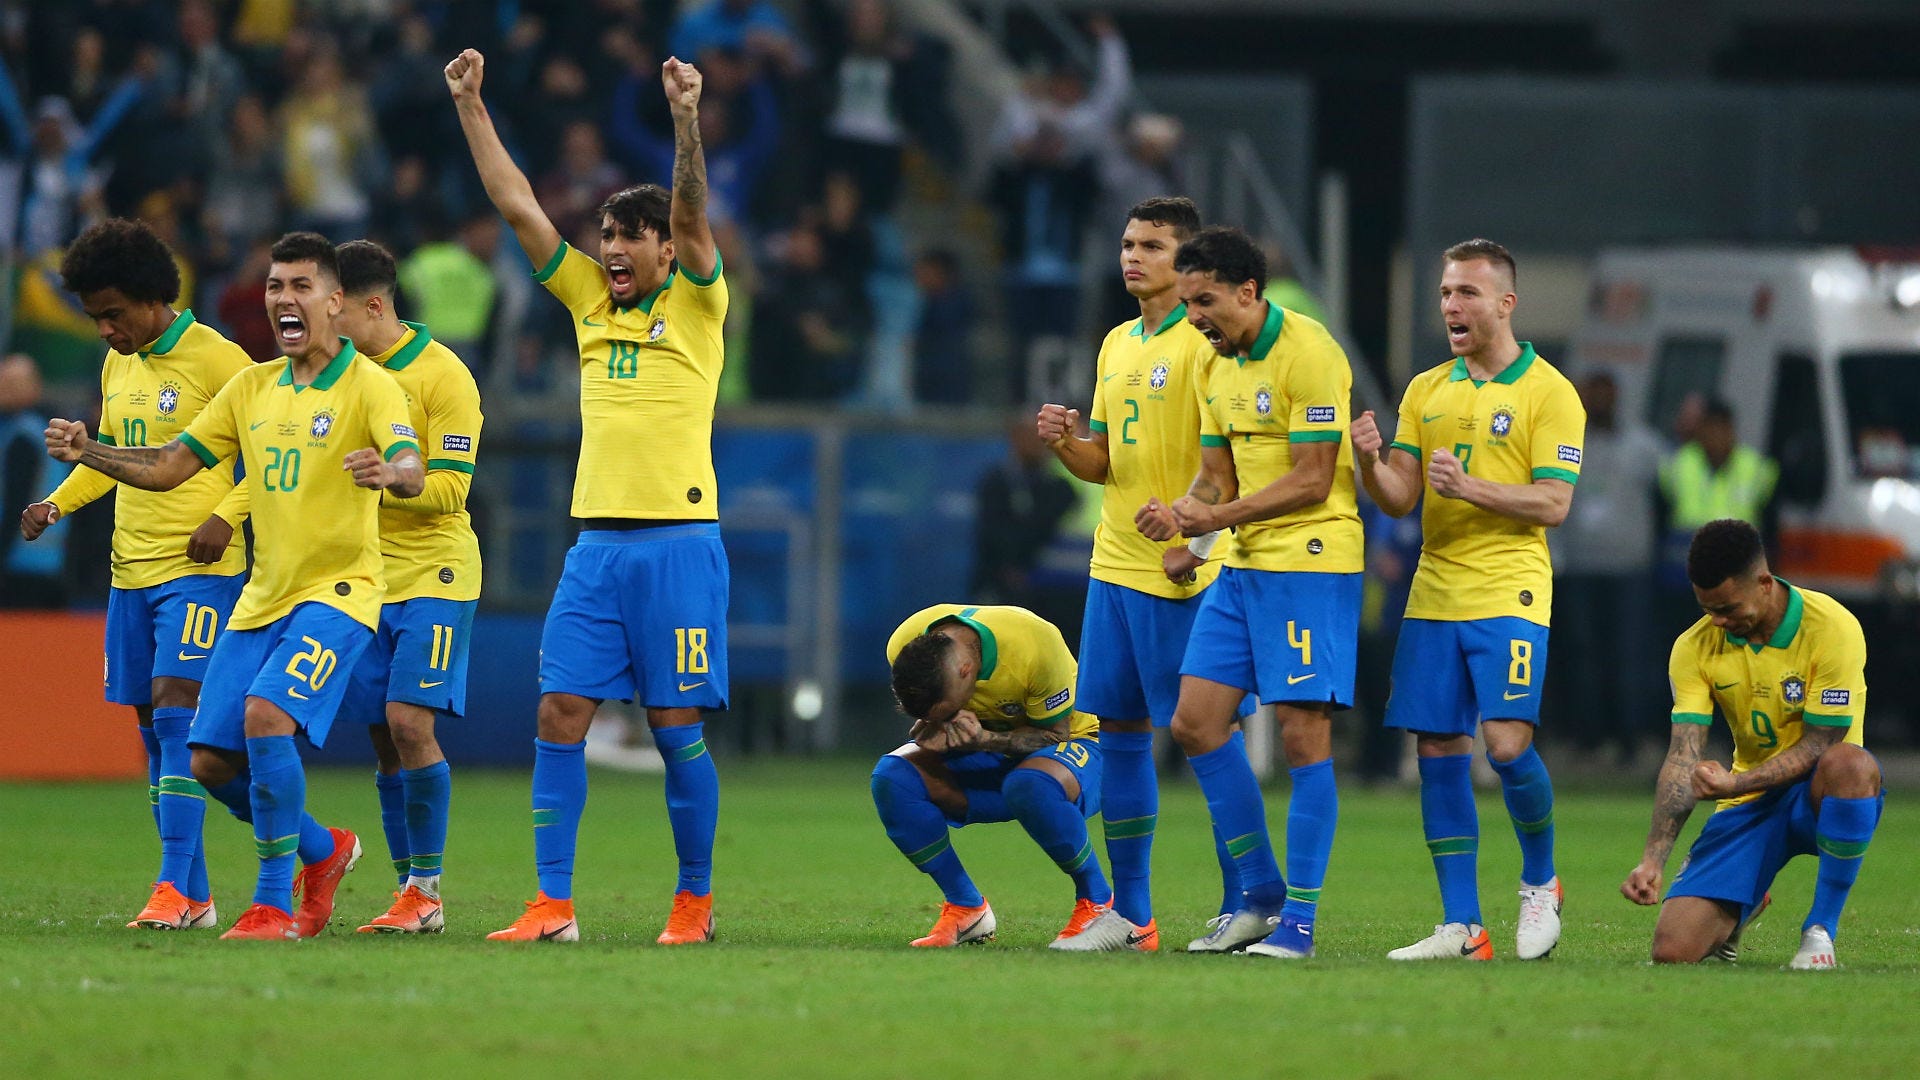 Sedese - Mineirão recebe jogos da Copa América 2019 a partir do próximo  domingo